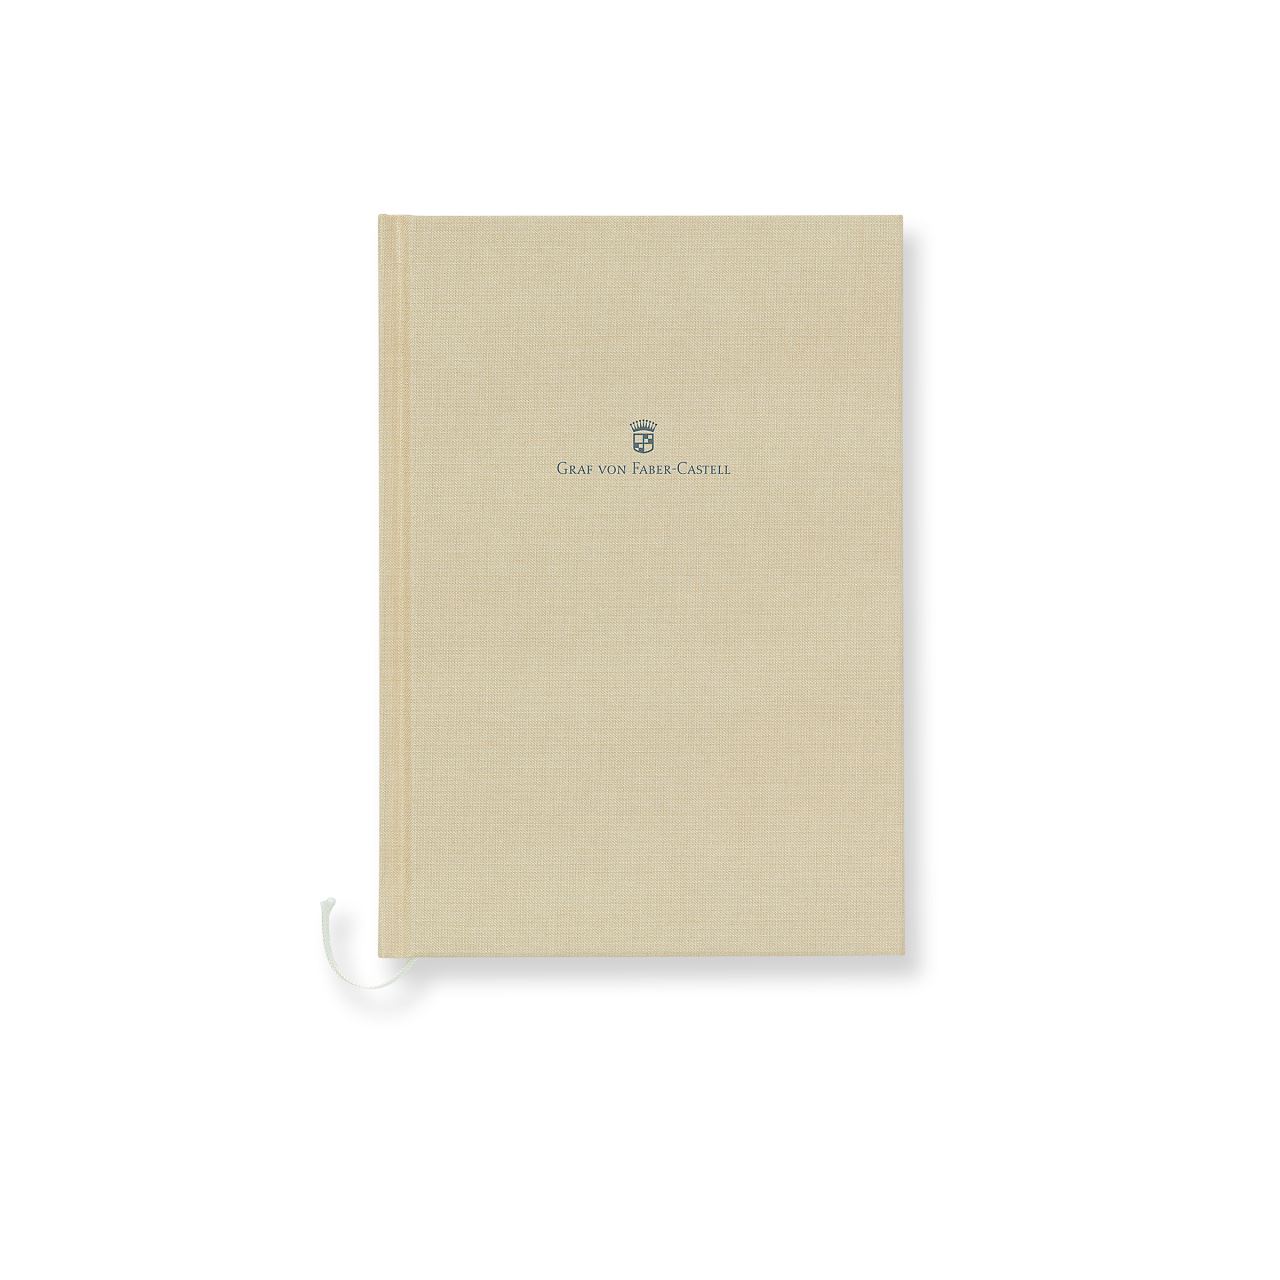 Graf-von-Faber-Castell - Cuaderno con cubierta de lino tamaño A5 marrón dorado